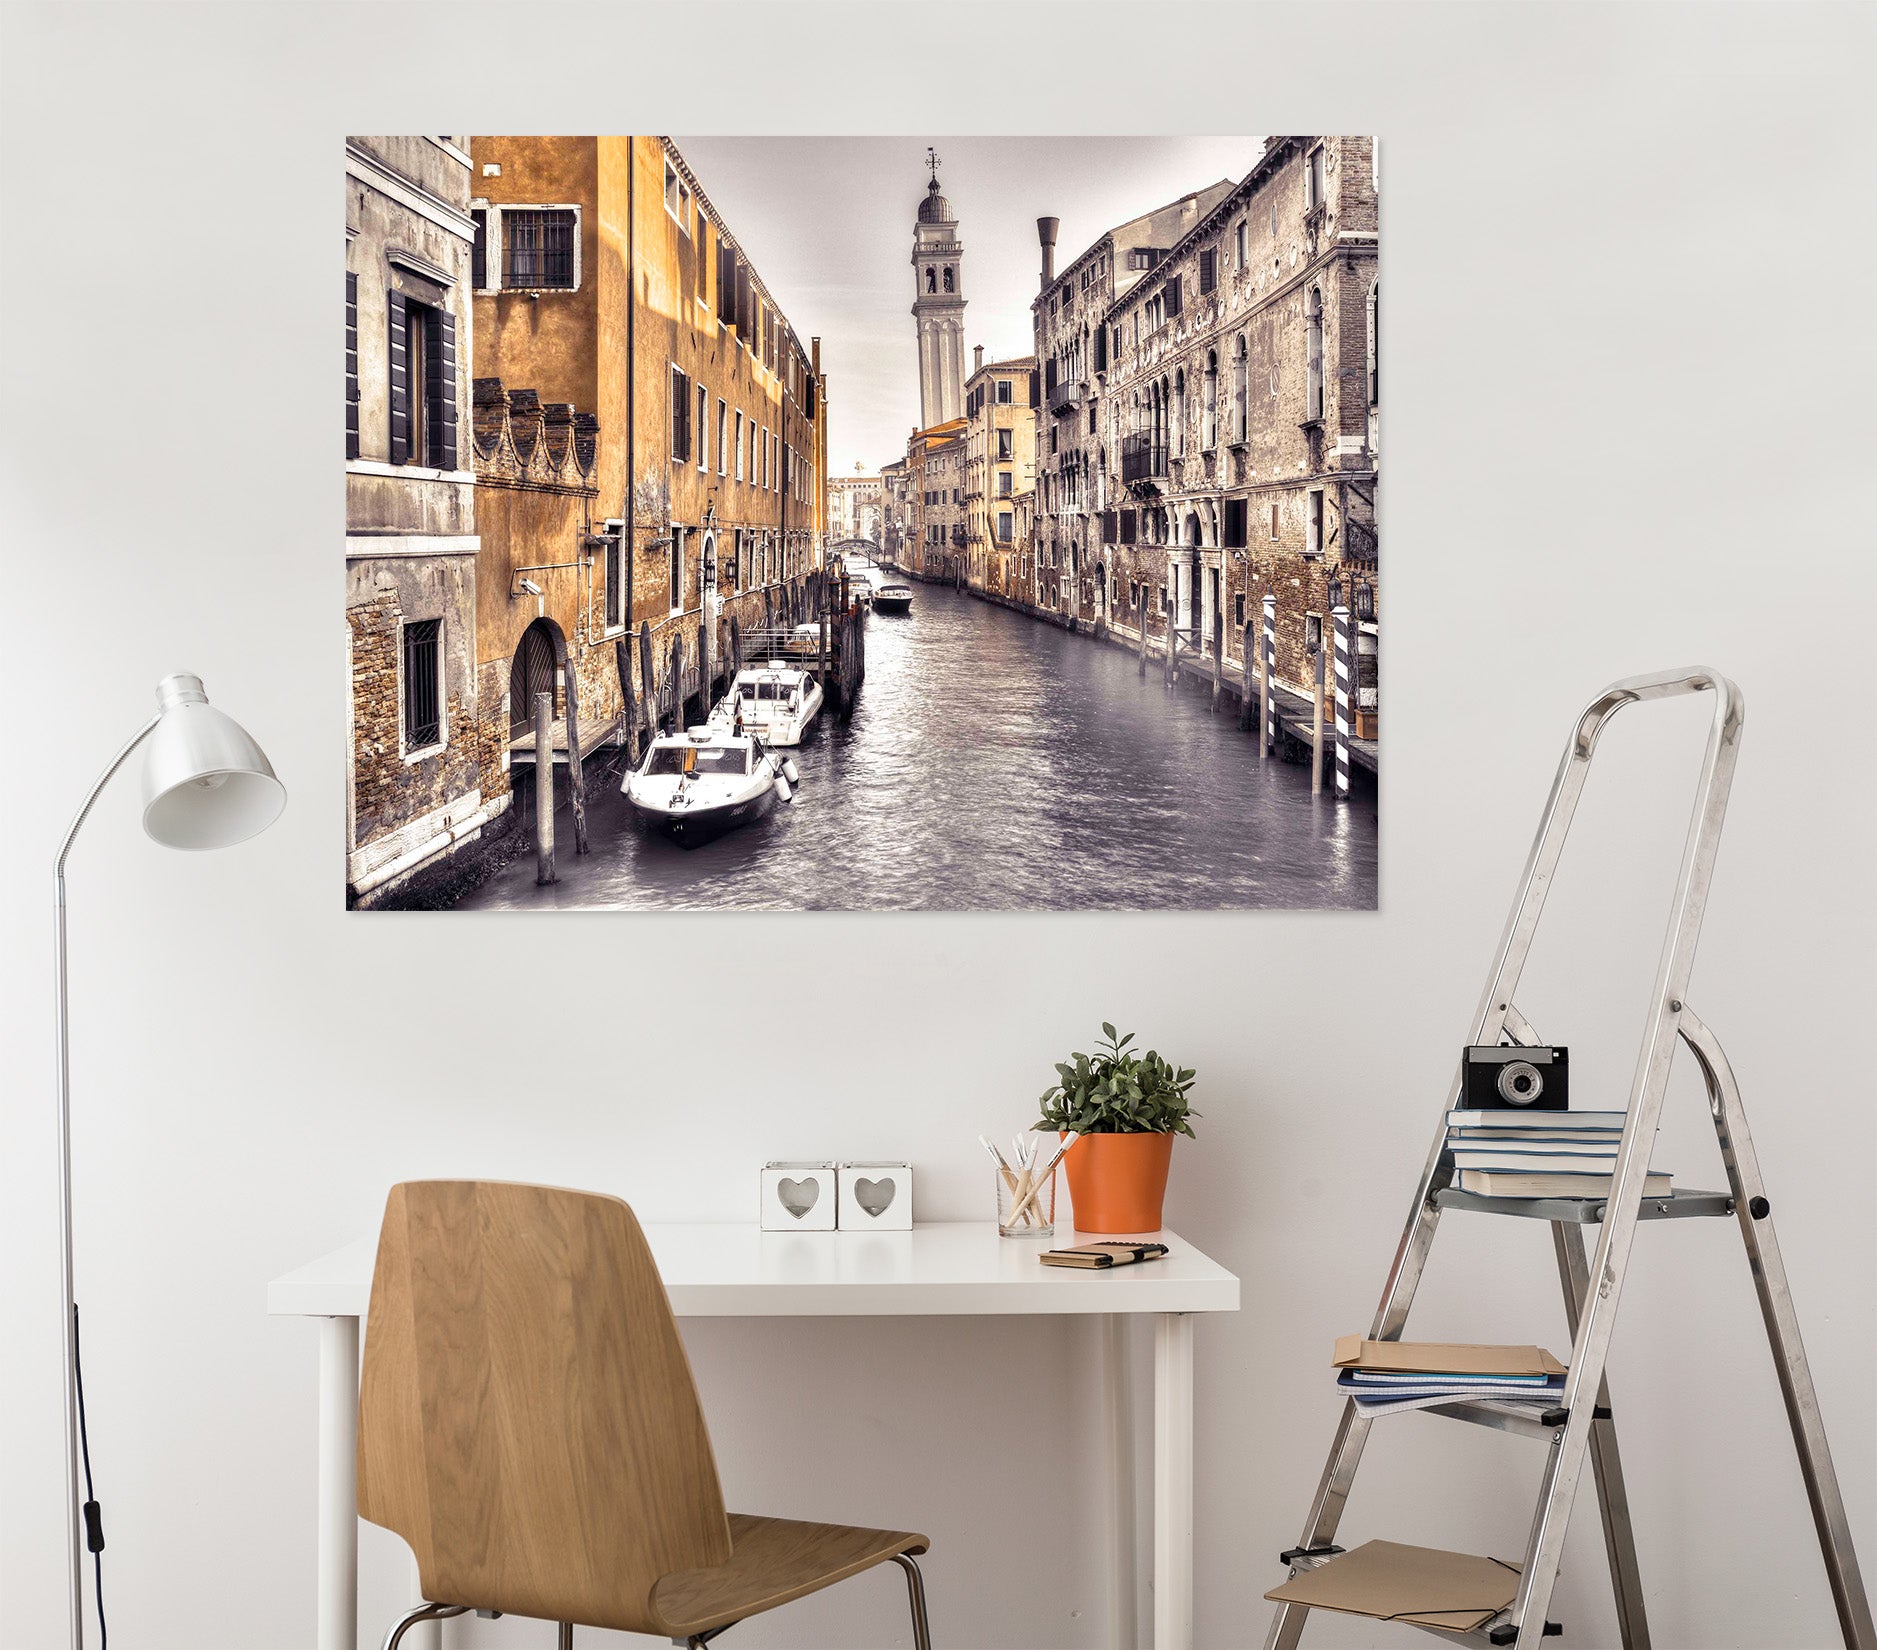 3D Venice River 016 Assaf Frank Wall Sticker